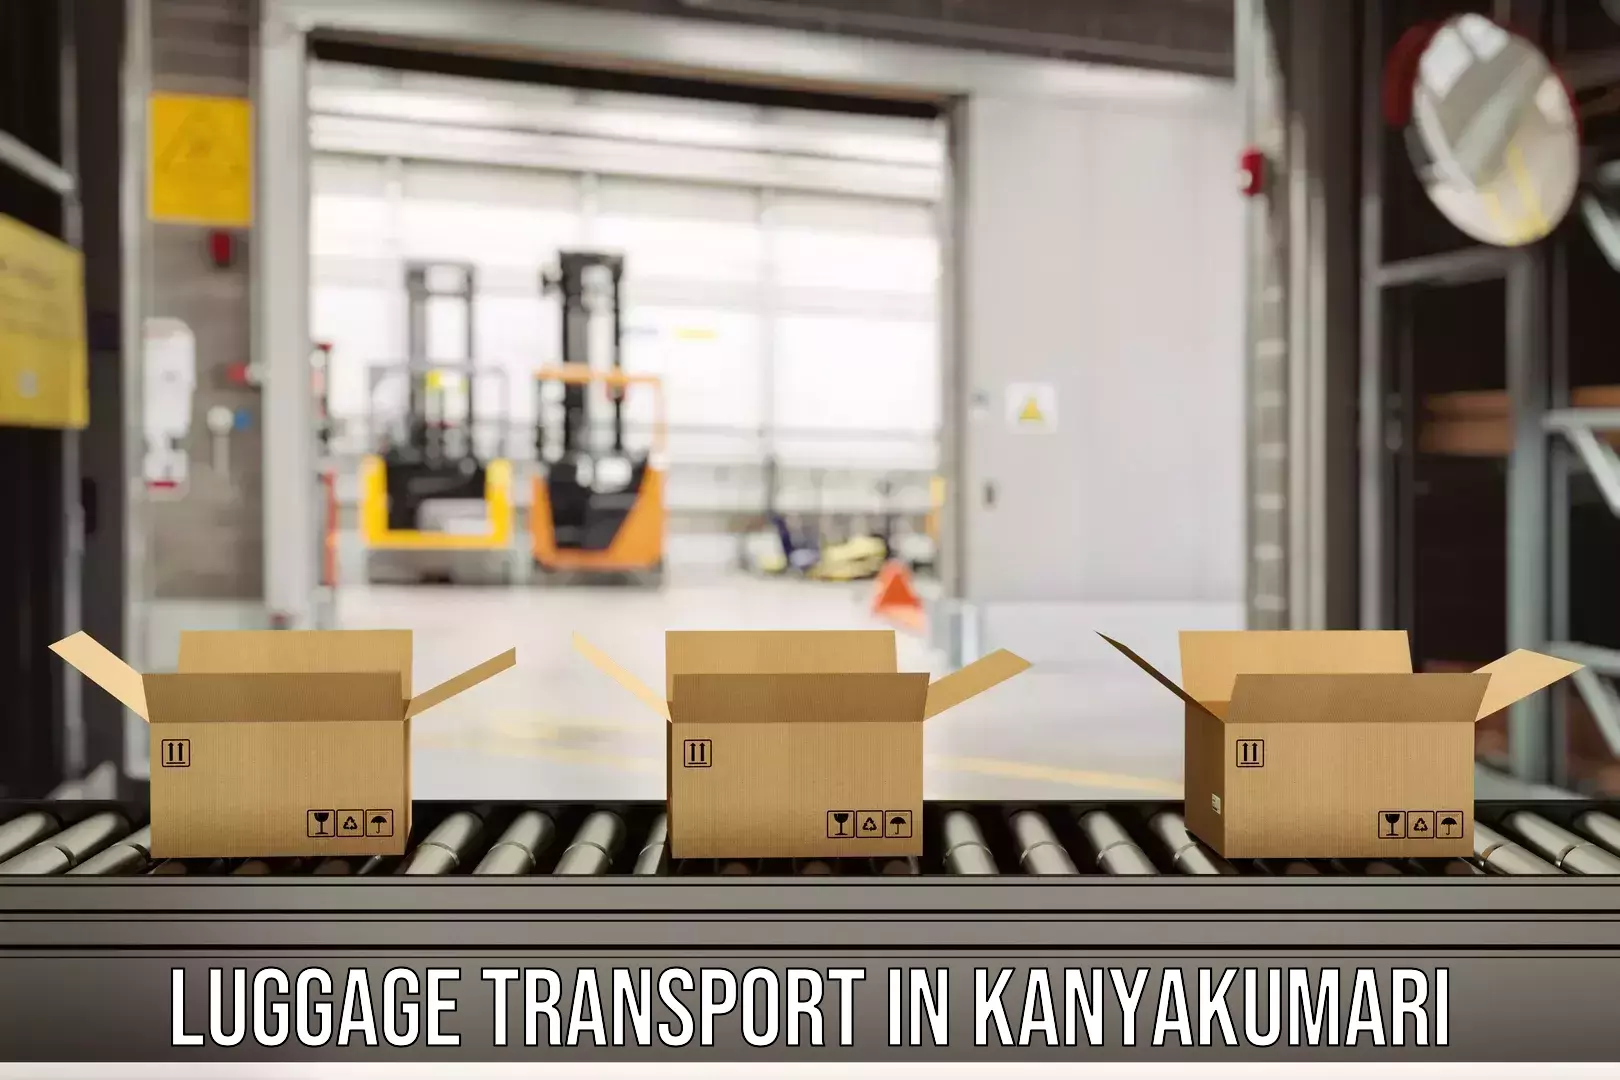 Luggage courier network in Kanyakumari